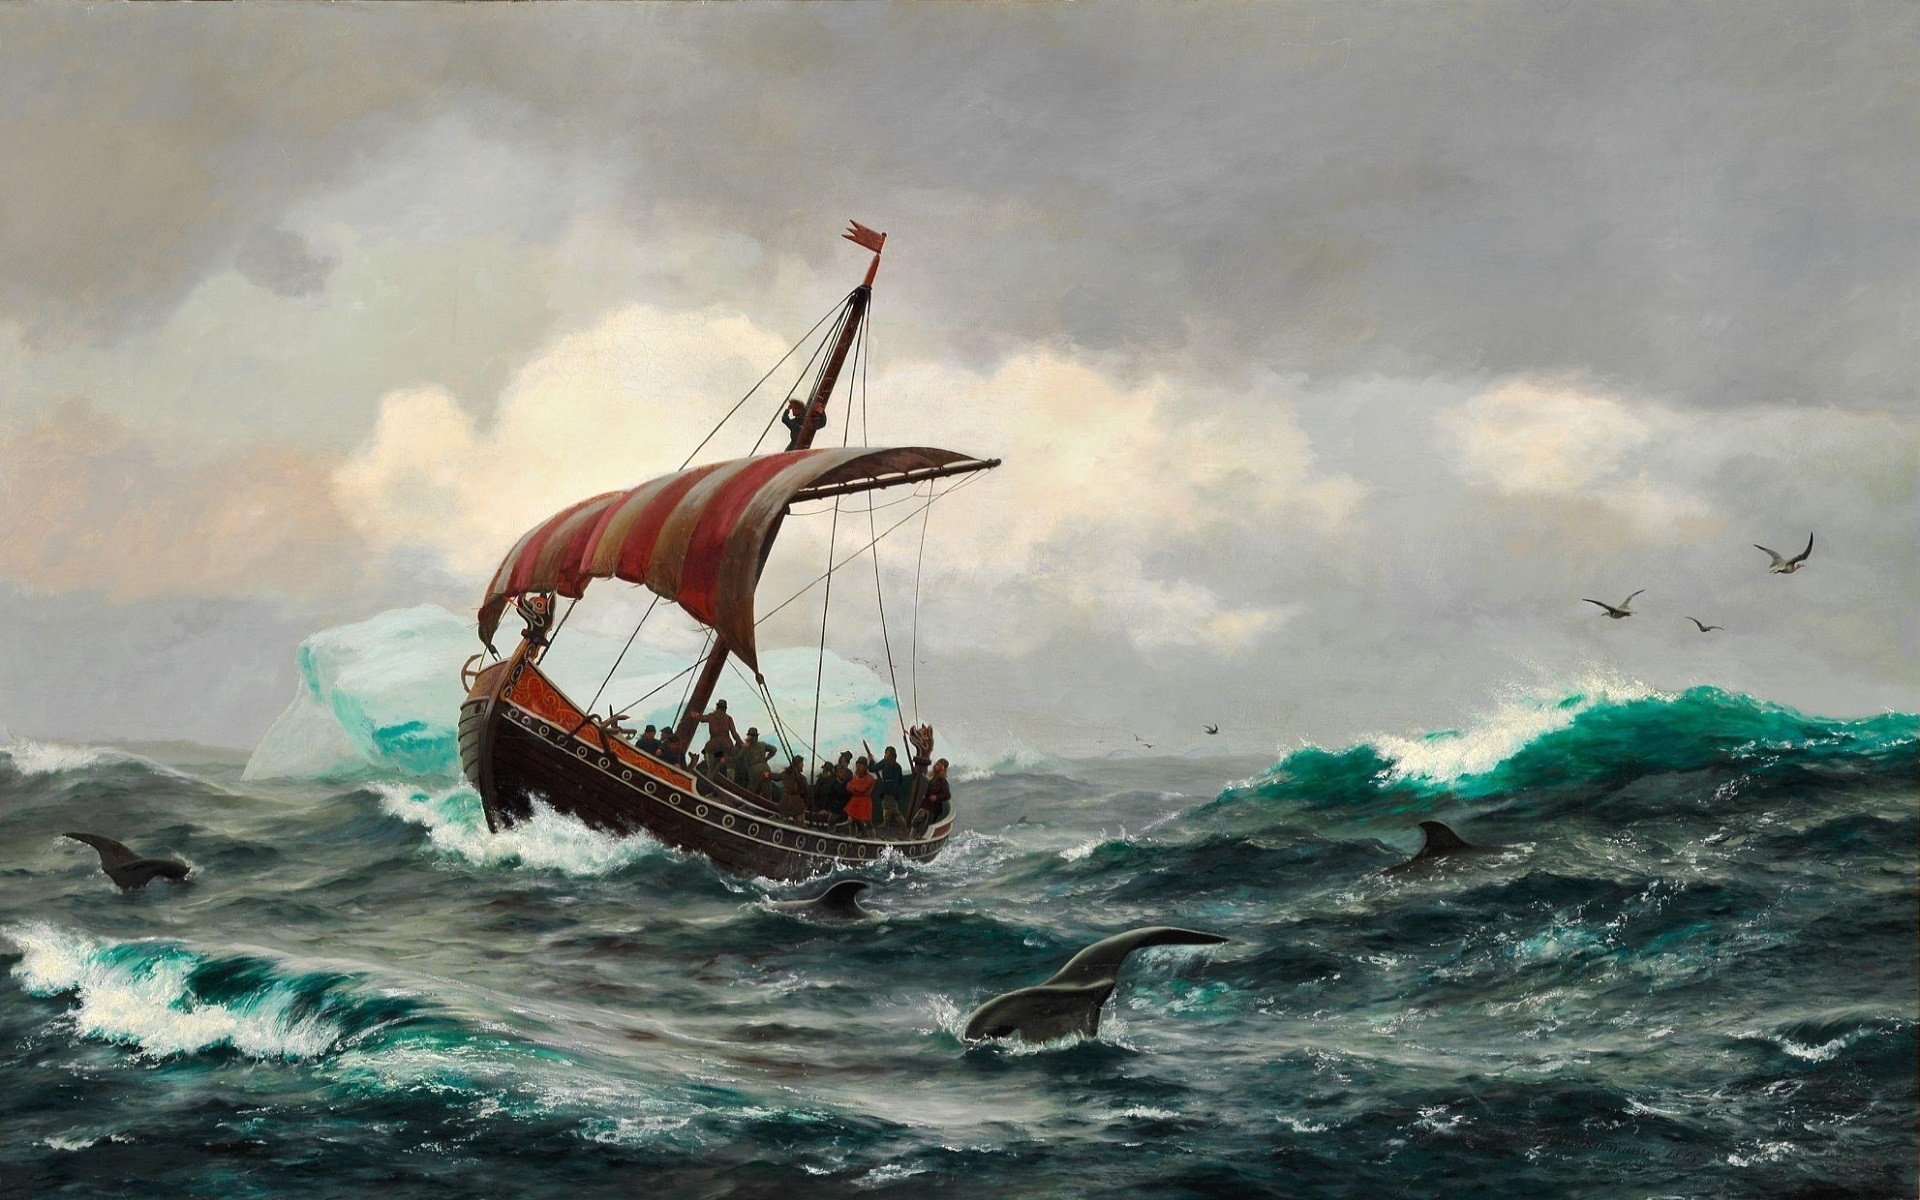 1920x1200 Vikings, Ship, Longships, Sailing ship, Sea, Waves, Artwork, Greenland